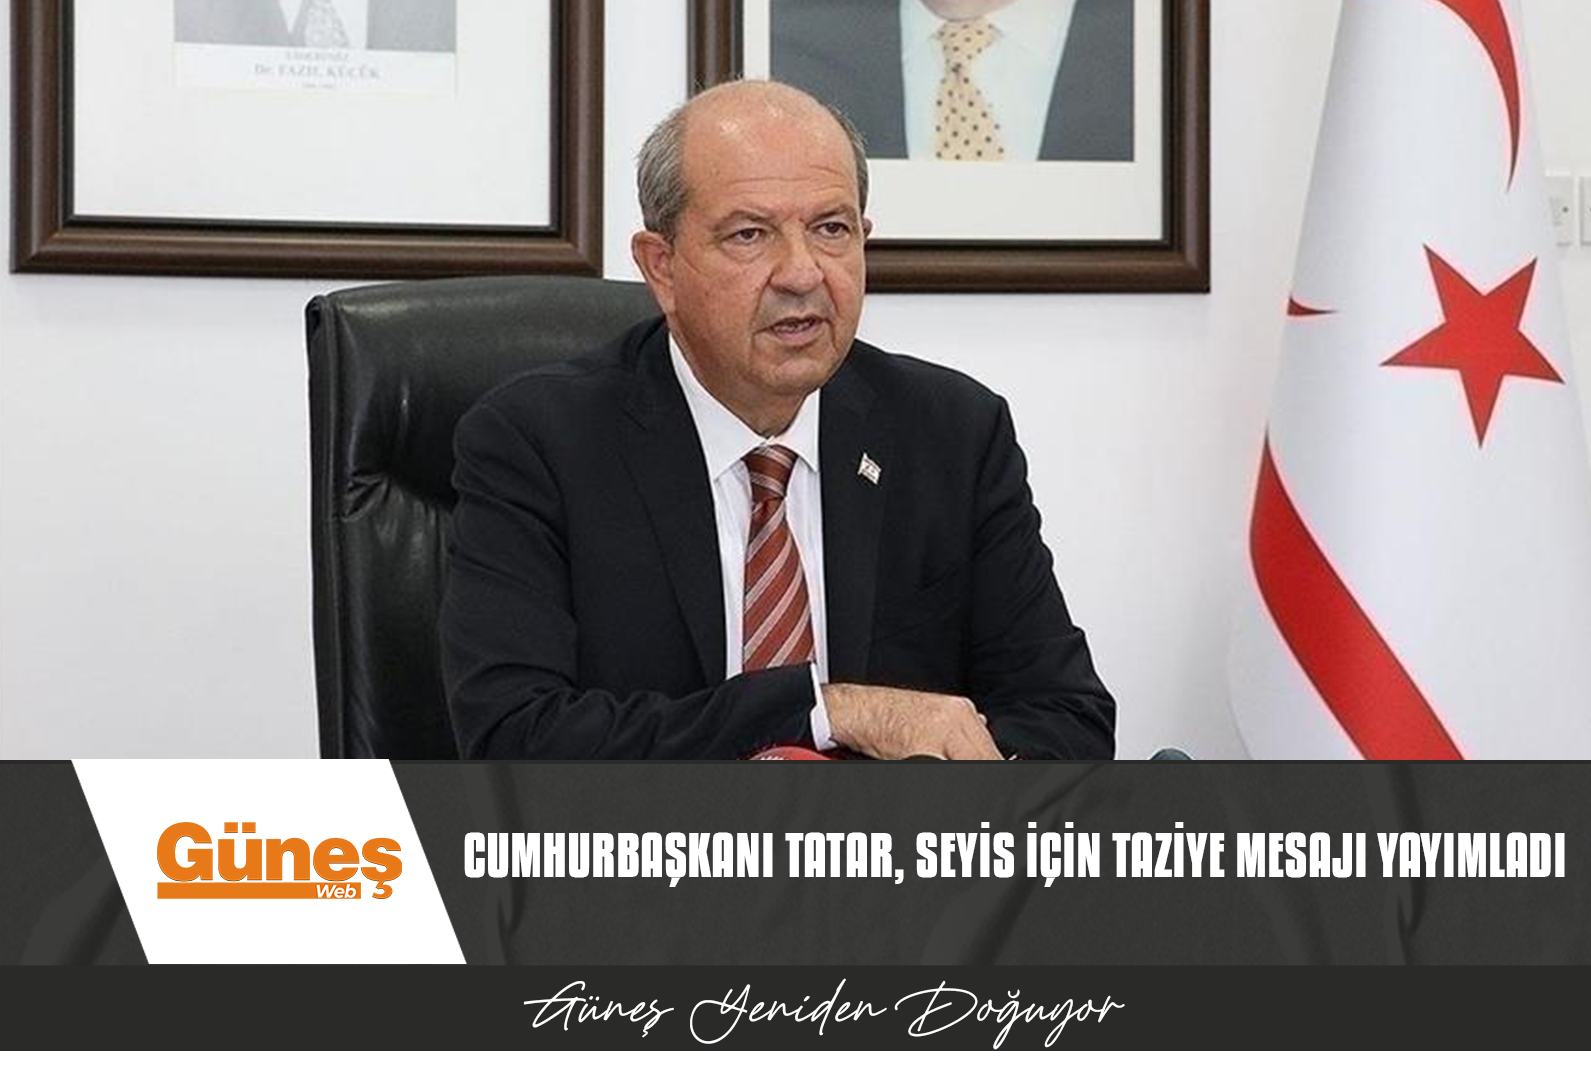 Cumhurbaşkanı Tatar, Seyis için taziye mesajı yayımladı